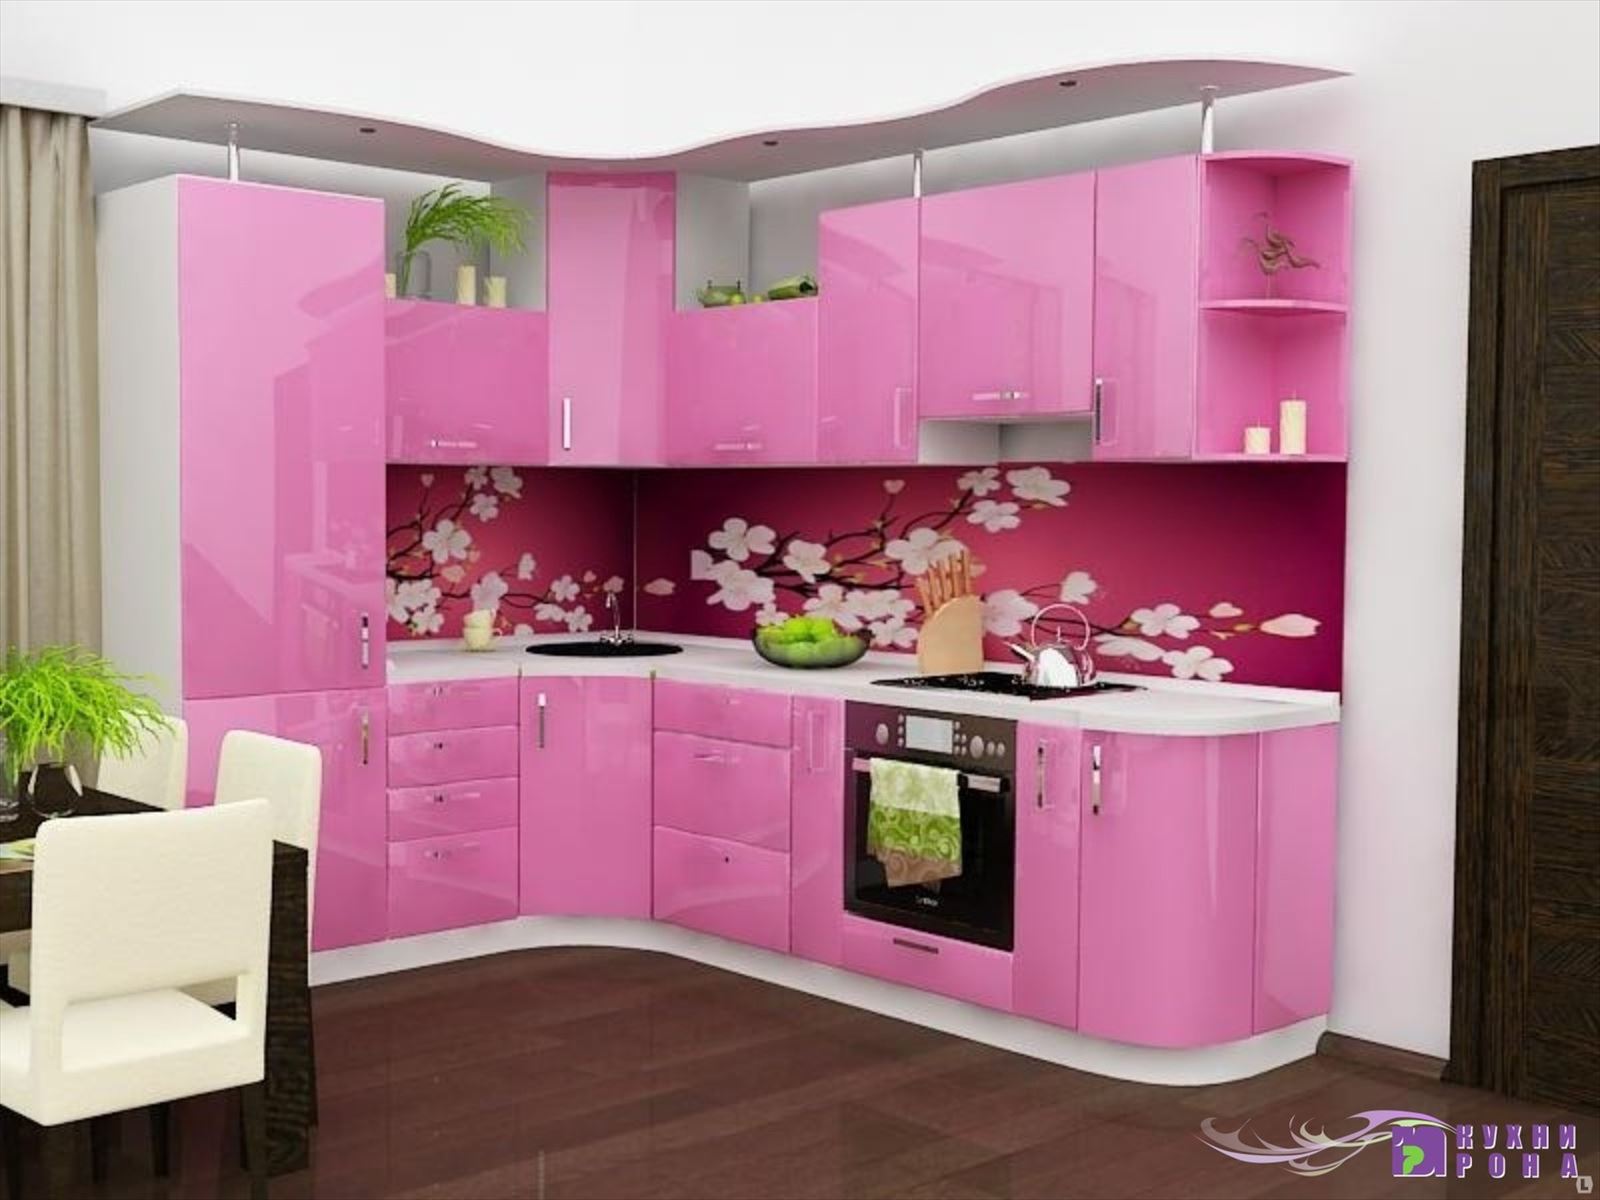 Купить кухонный в кемерово. Кухонные гарнитуры. Кухонный гарнитур розовый. Красивый кухонный гарнитур. Угловые кухни.